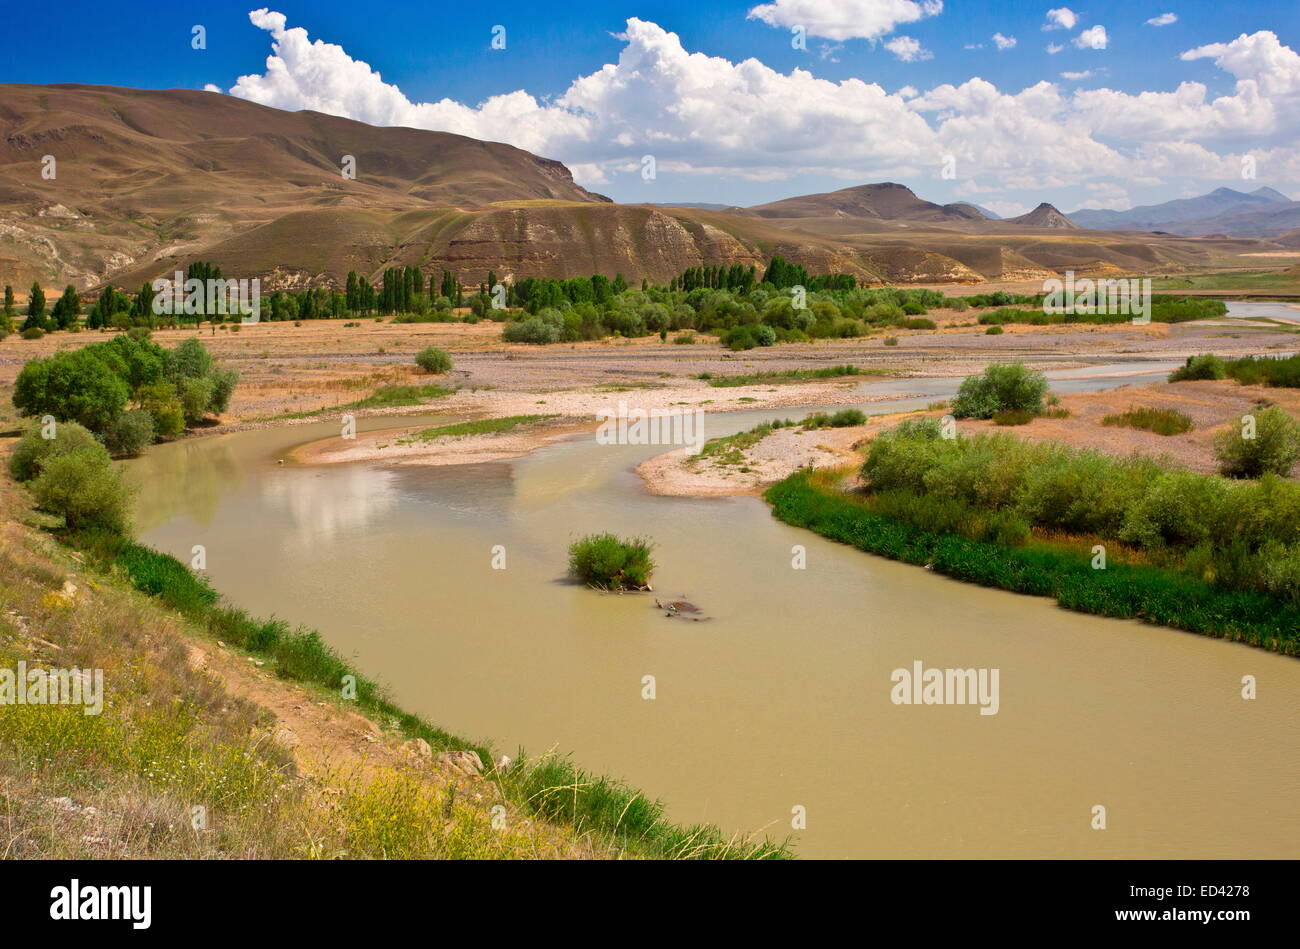 Rivière qui coule à travers la prairie steppe sèche, semi-désert, dans le nord-est de la Turquie, à l'est d'Erzurum. Banque D'Images